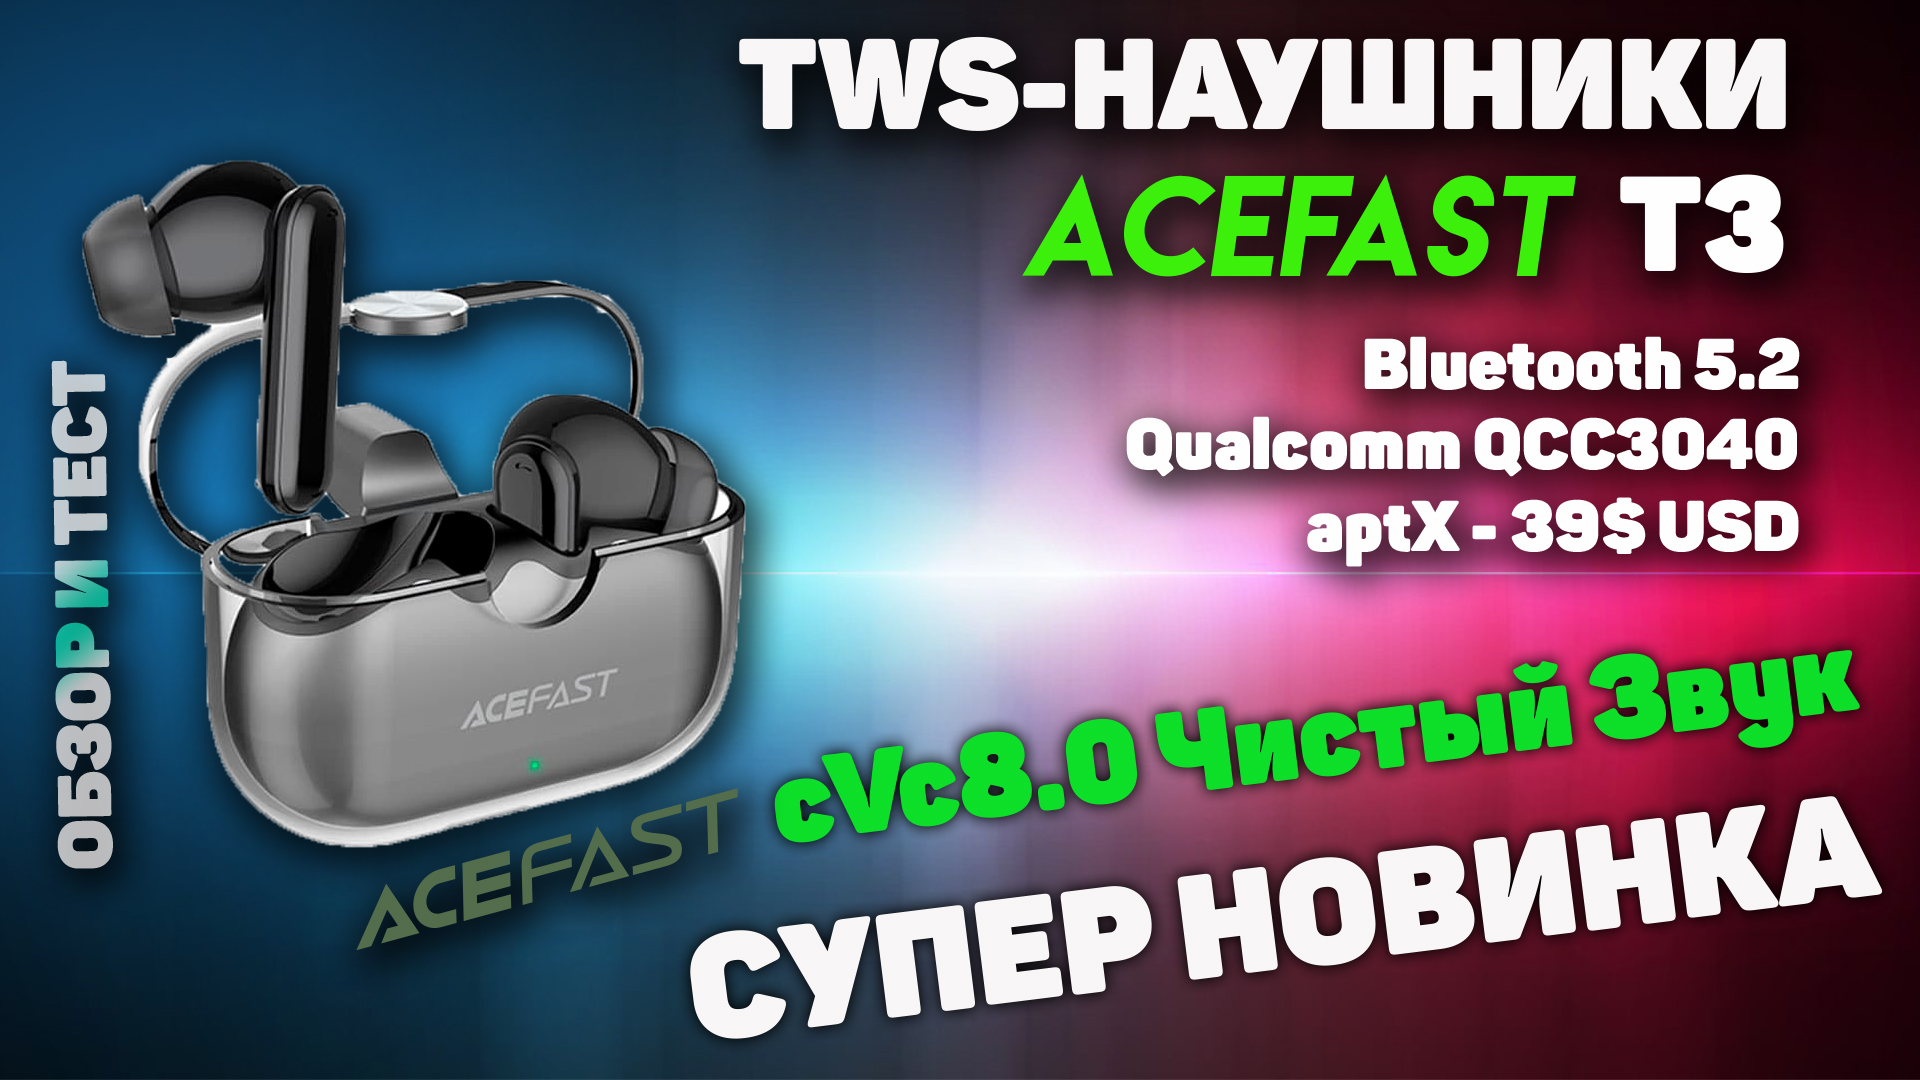 Acefast Crystal T3 Обзор беспроводных TWS-наушников с поддержкой aptX